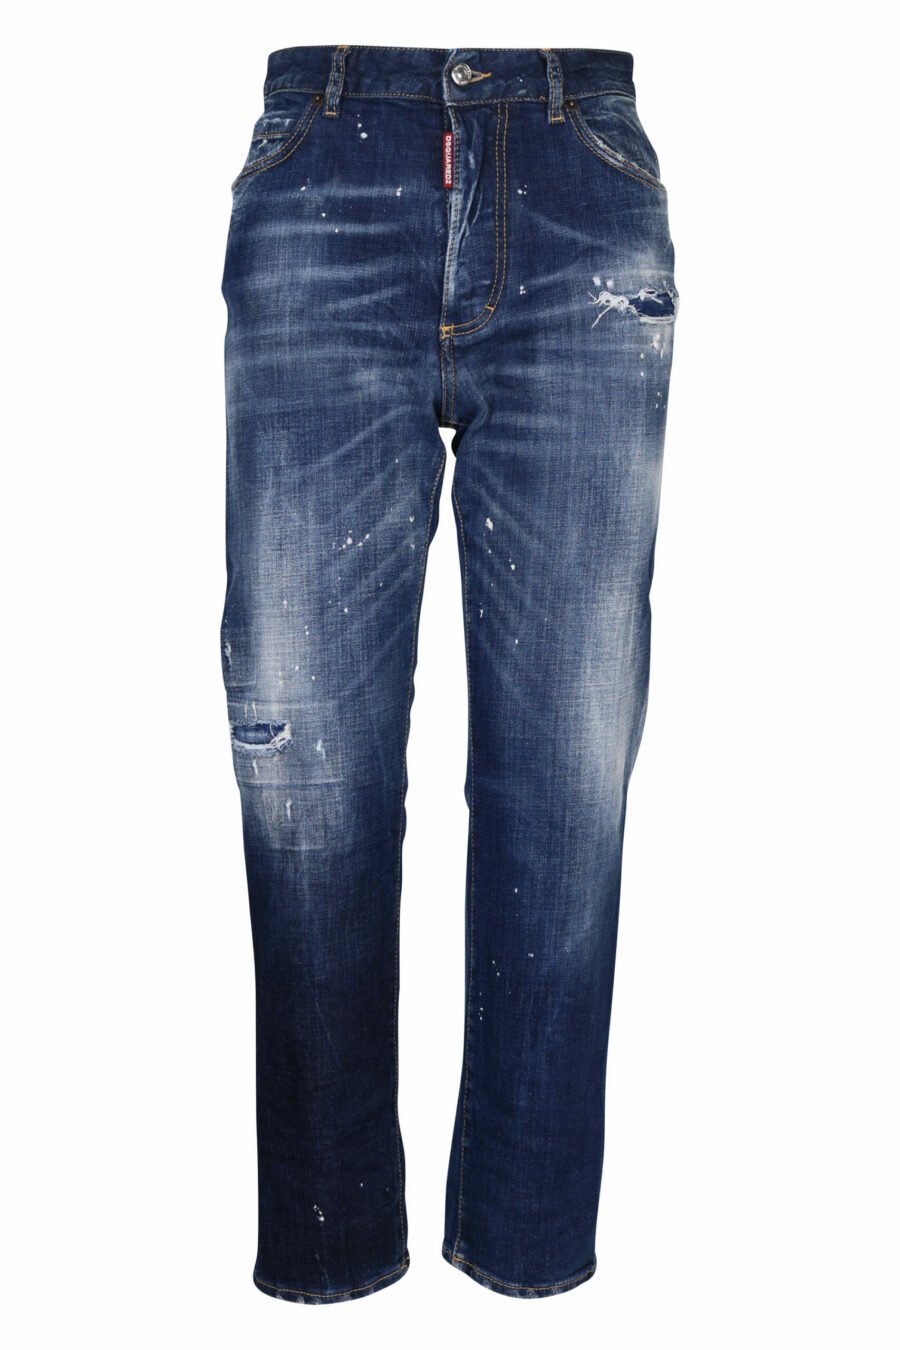 Pantalón vaquero "boston jean" azul desgastado con rotos - 8054148122256 scaled